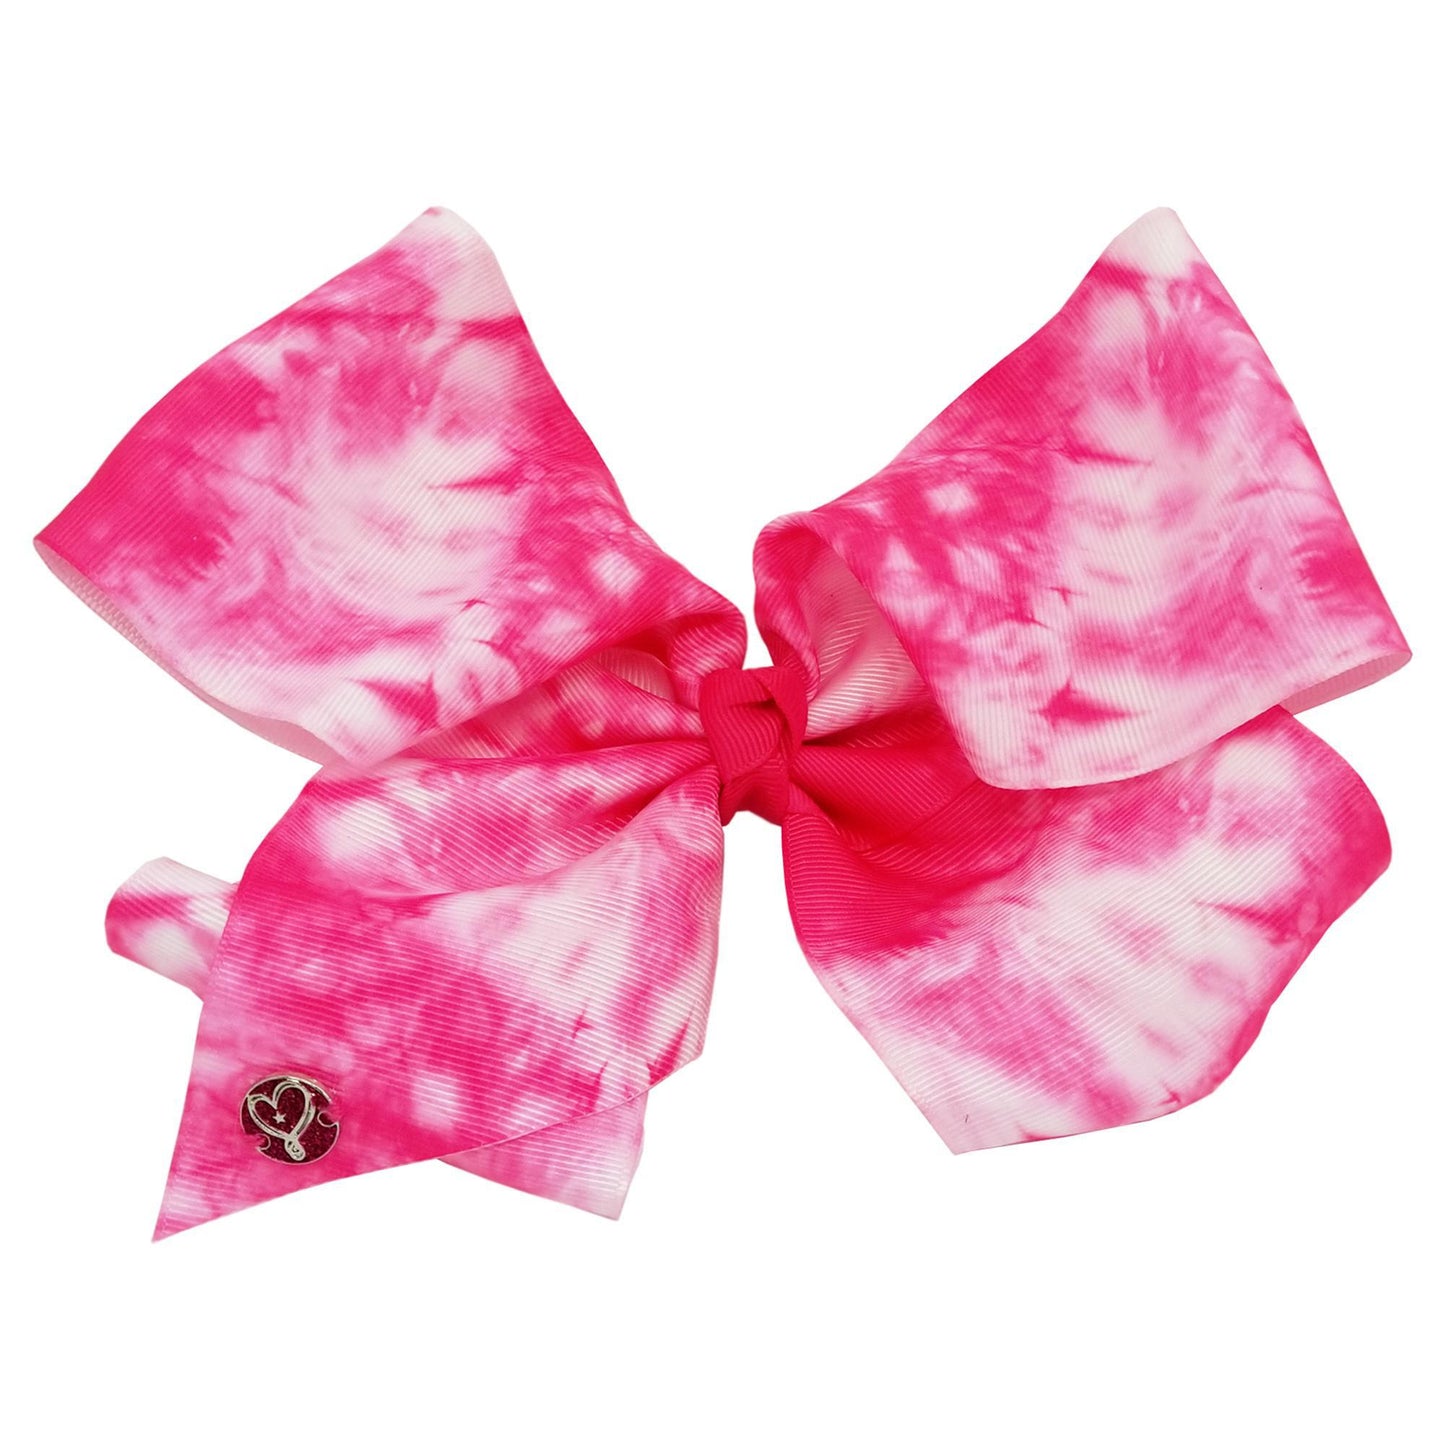 JoJo Siwa  Large Cheer Hair Bow (Neon Pink Tie Dye)